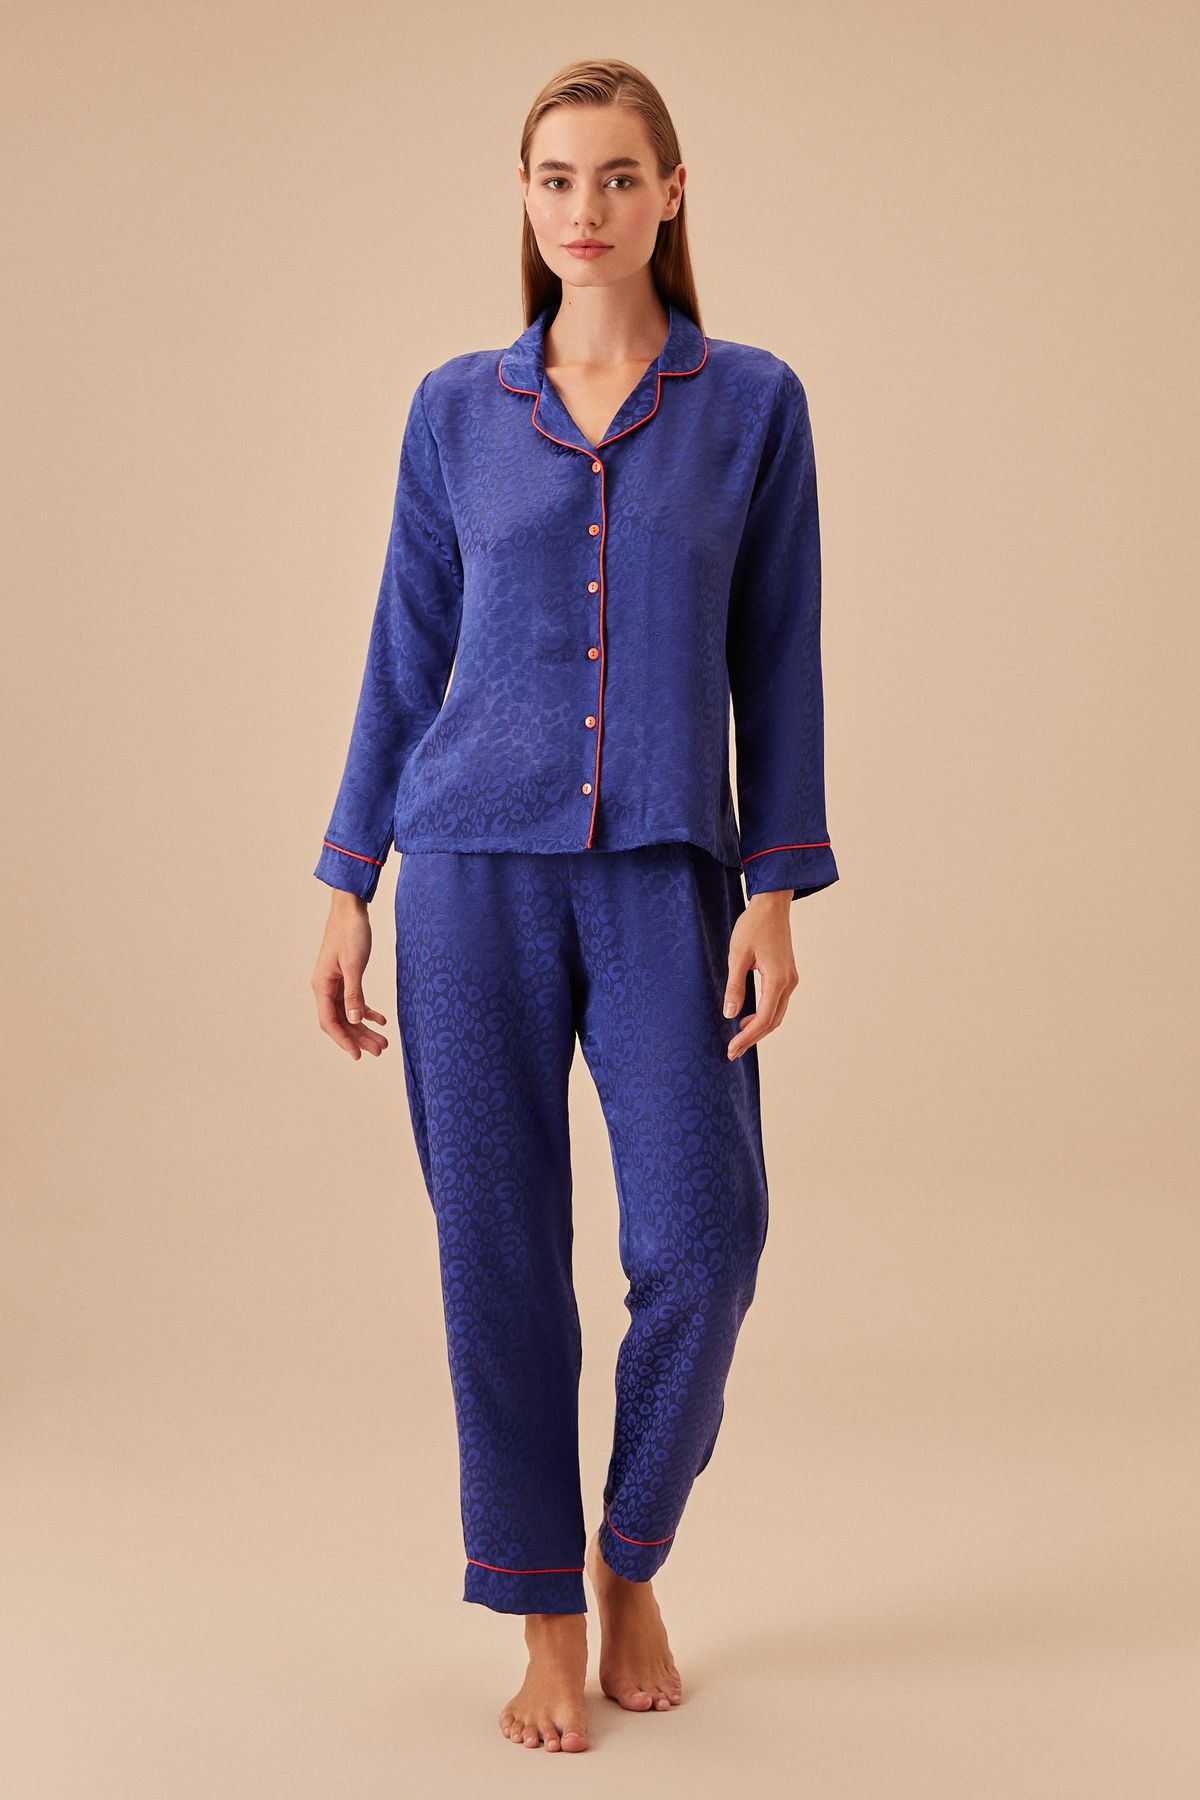 Suwen Elegance Maskülen Pijama Takımı